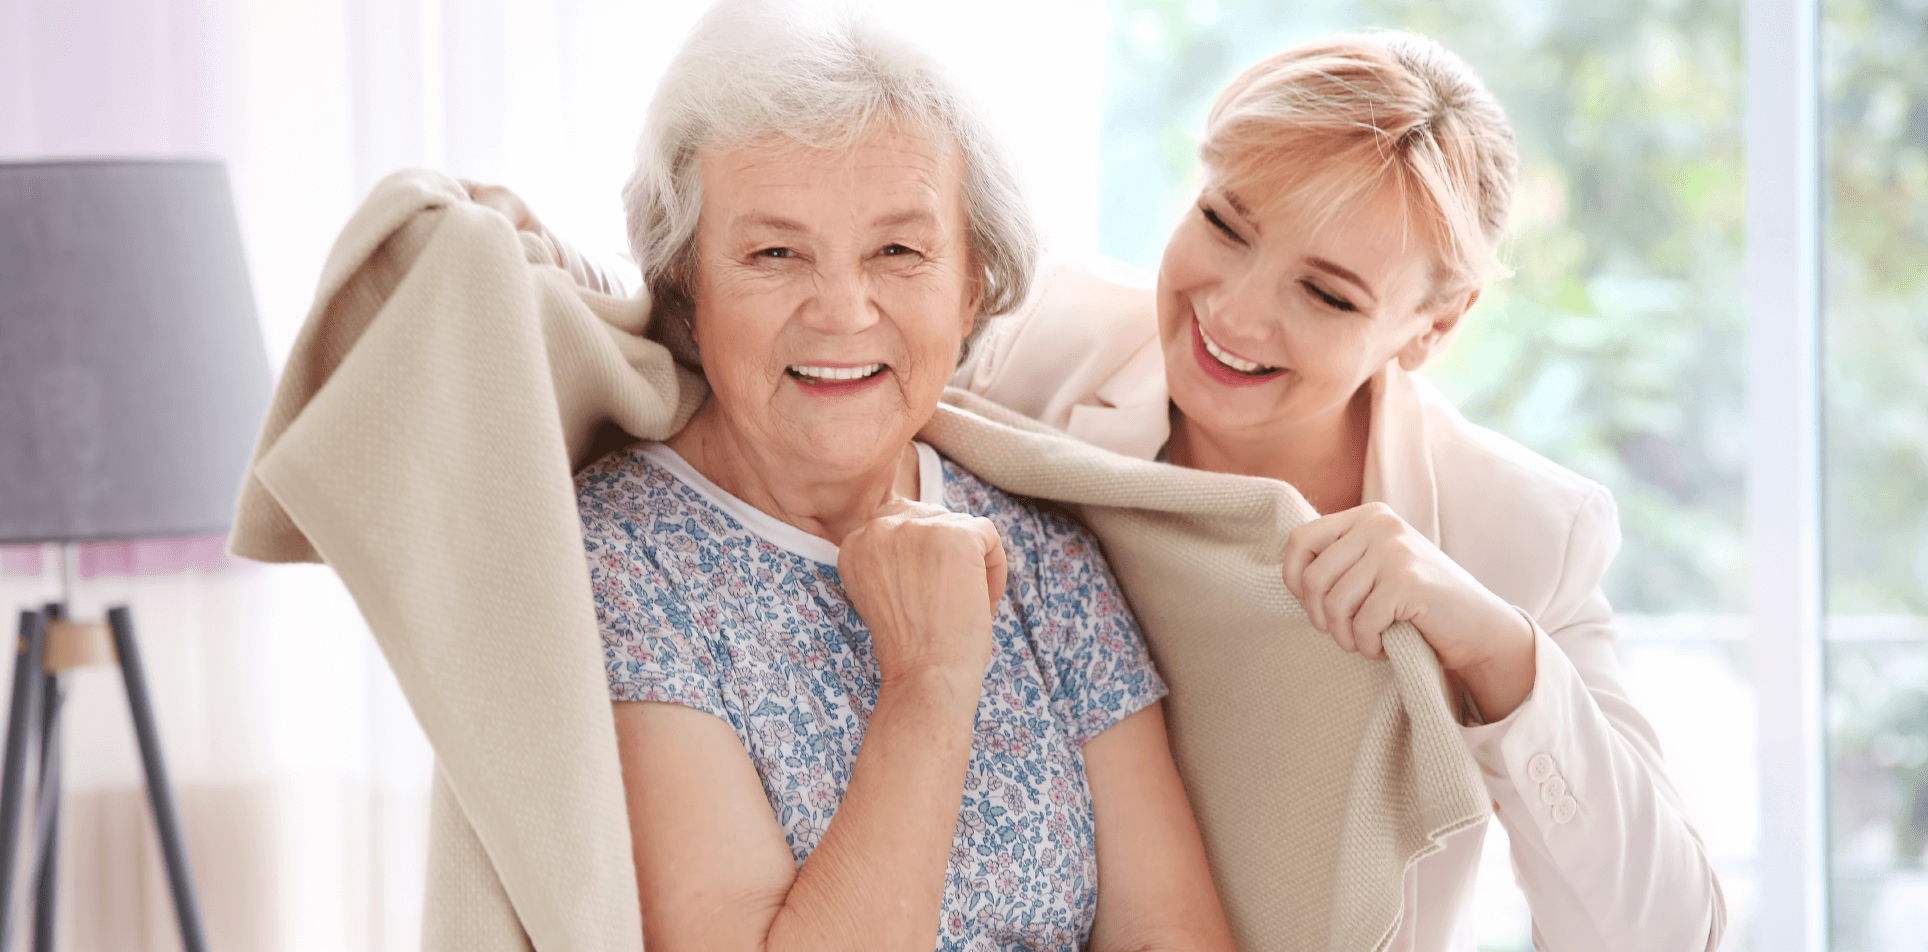 La Vie Care - Frail & Dementia Care